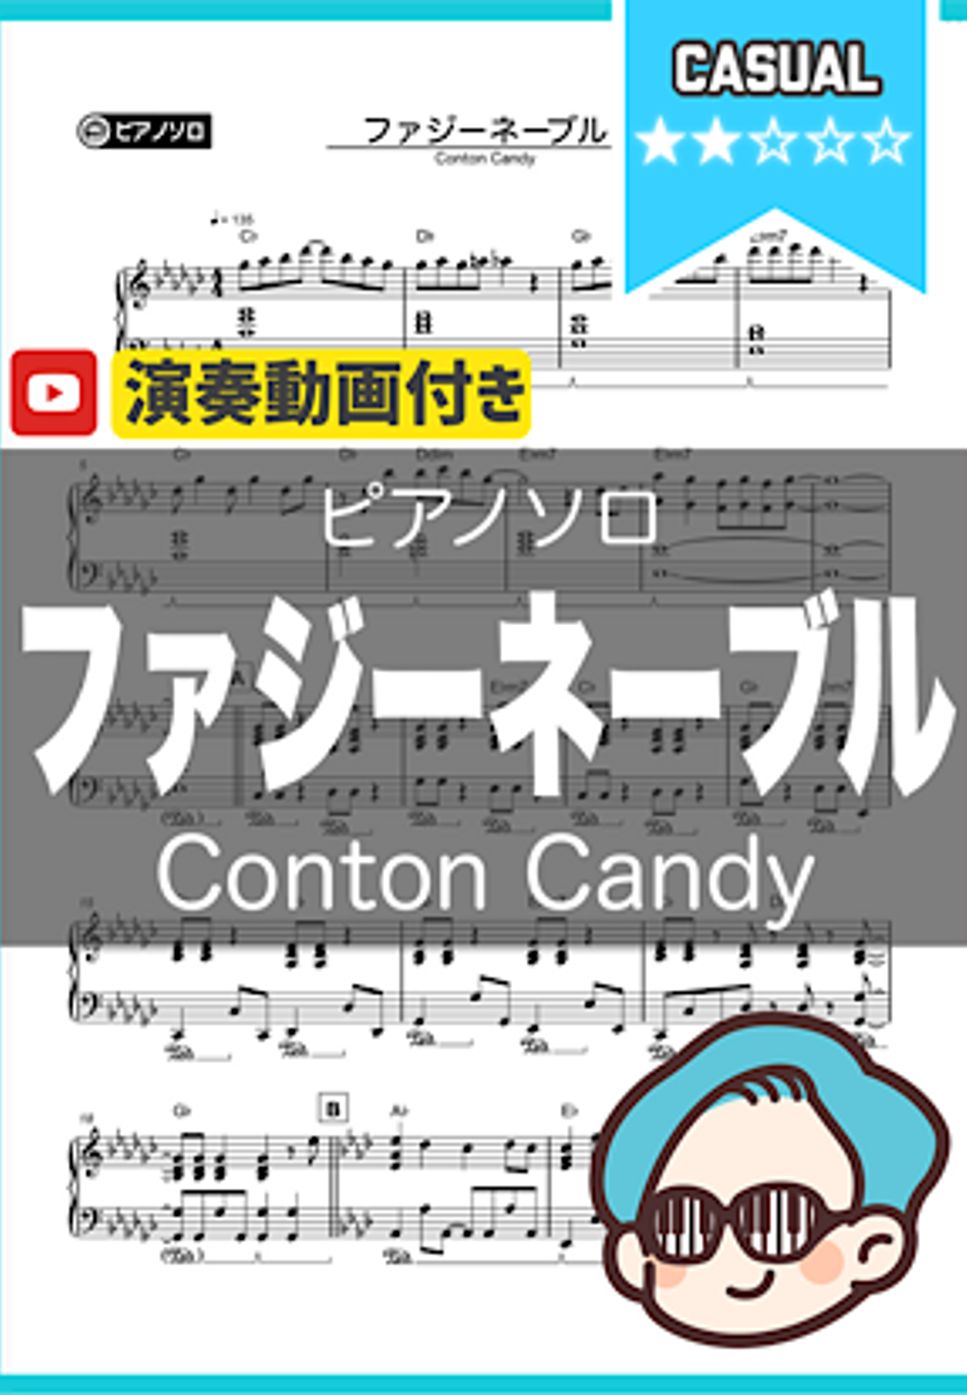 ContonCandy - ファジーネーブル by シータピアノ